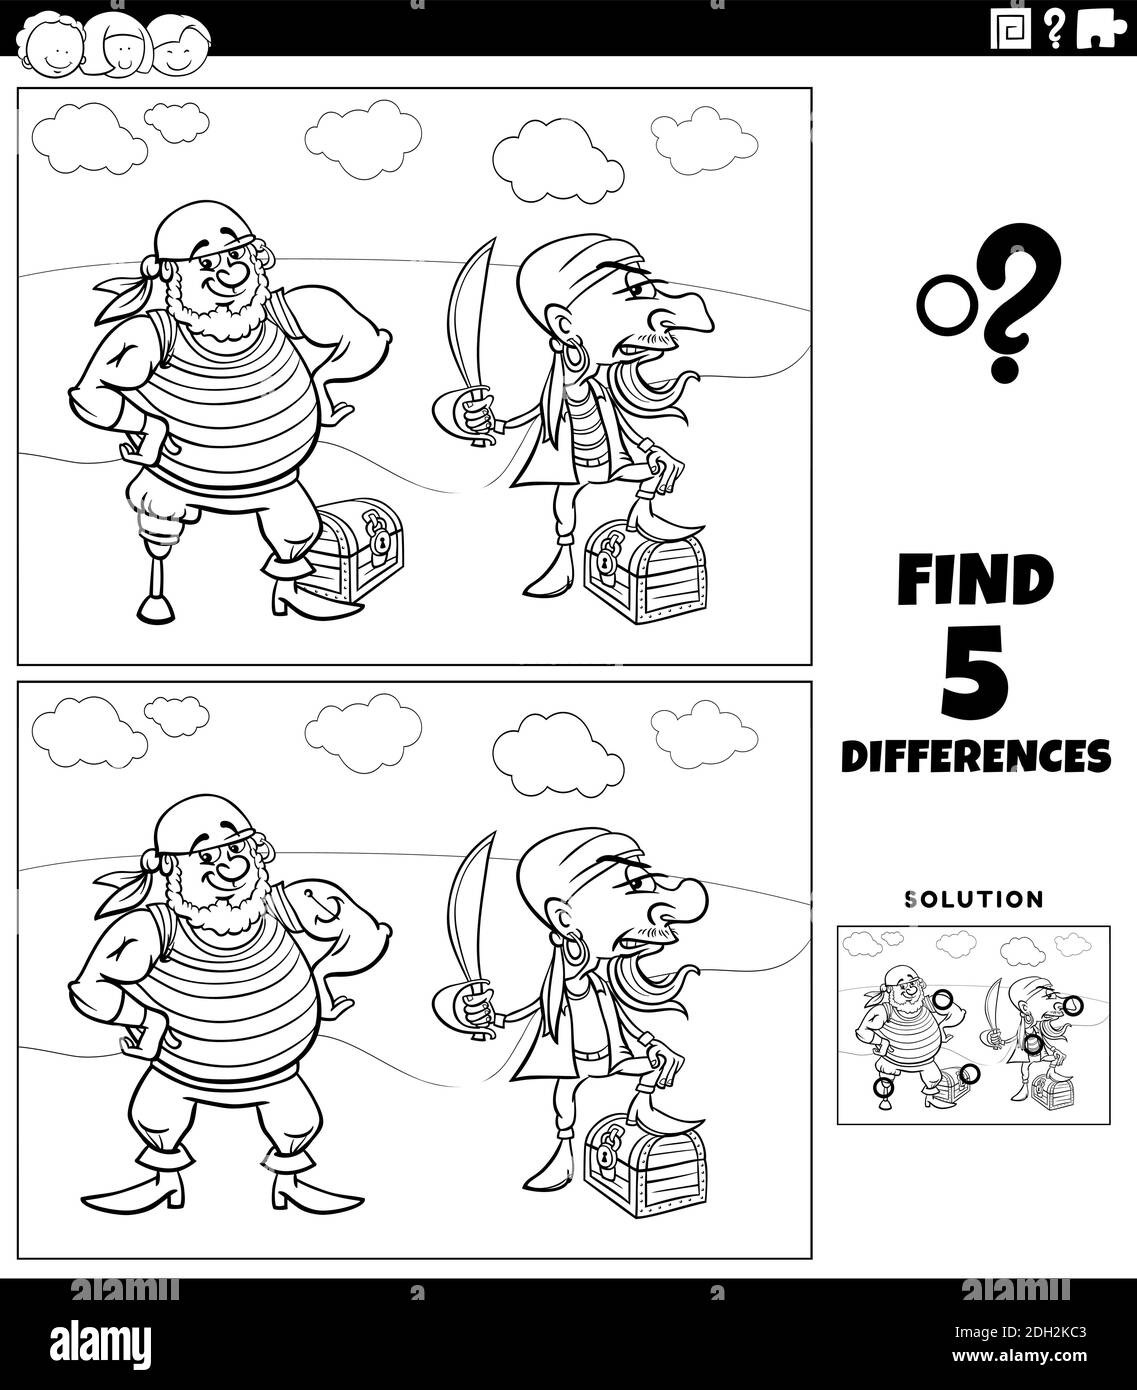 Illustration de dessin animé noir et blanc de la recherche des différences entre images jeu éducatif pour les enfants avec des pirates et leur trésor colorin Illustration de Vecteur